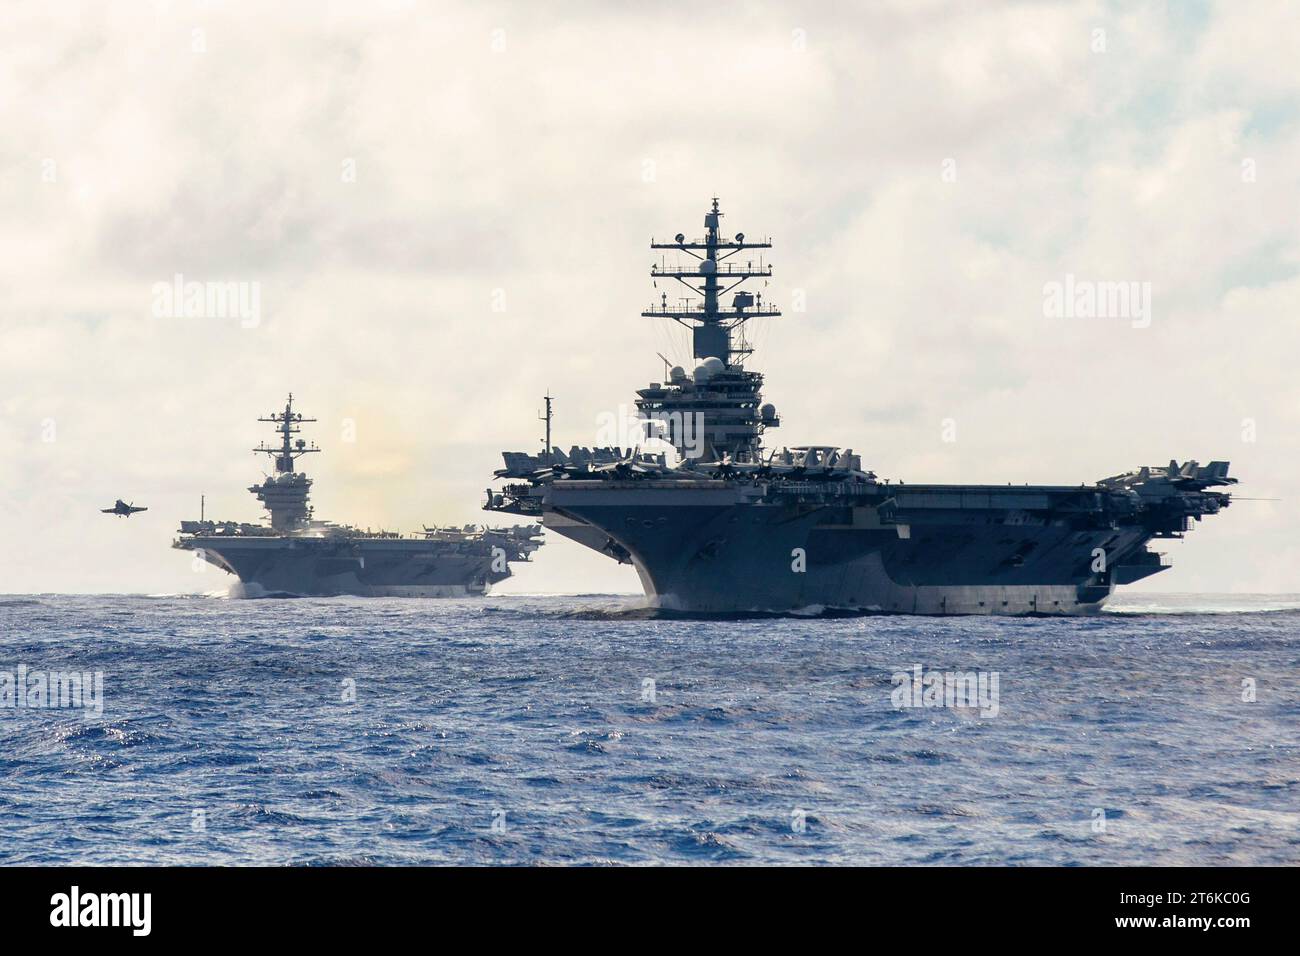 6. November 2023 - Philippinische See - die Flugzeugträger der Nimitz-Klasse USS Carl Vinson (CVN 70) und USS Ronald Reagan (CVN 76) durchquerten die Philippinische See am 6. November 2023. Carl Vinson und Ronald Reagan nehmen am bilateralen Multi-Large Deck Event (MLDE) Teil, bei dem die Schiffe und Flugzeuge der Japan Maritime Self-Defense Force (JMSDF) Escort Flotilla 3 sowie die USA NavyÃs Carrier Strike Group 1 und Carrier Strike Group 5 vertreten sind. MLDE ist eine Veranstaltung mit mehreren Domänen, die die bereits heute bestehende starke Partnerschaft und Interoperabilität zwischen der JMSDF und der US Navy stärkt. (Kreditbild Stockfoto